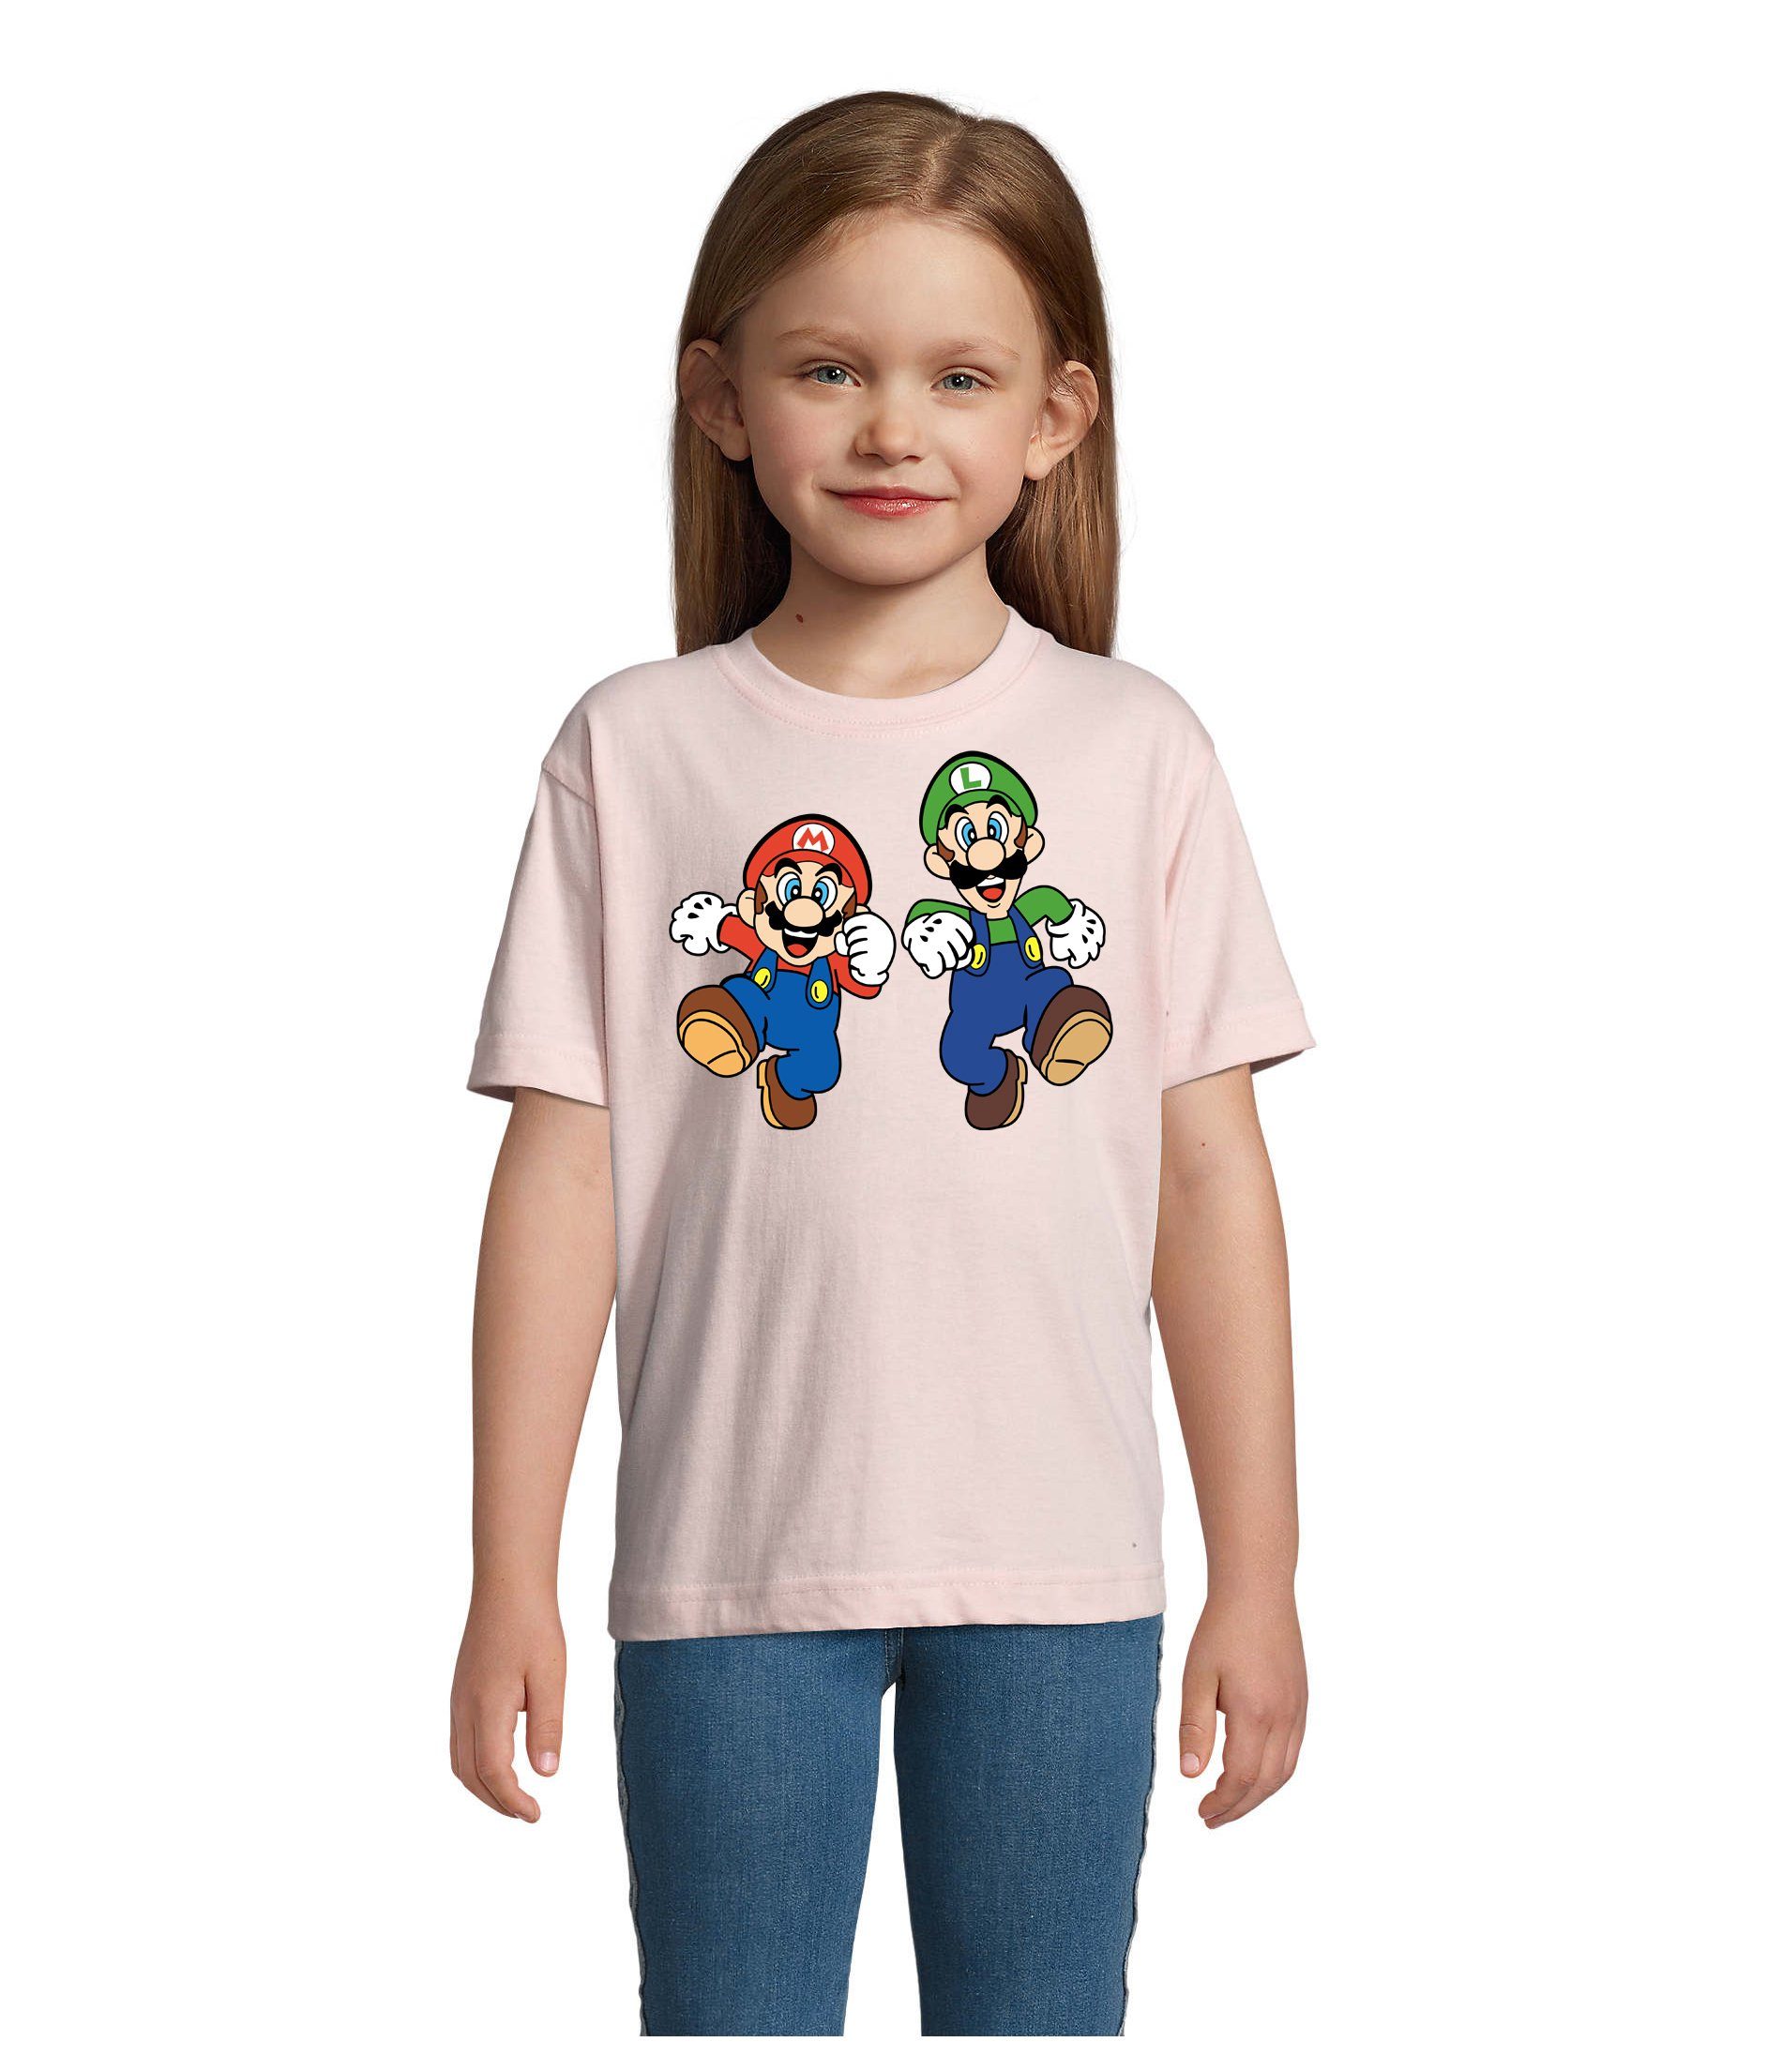 Blondie & Brownie T-Shirt Kinder Mario & Luigi Bowser Nintendo Yoshi Game Gamer Konsole Rosa